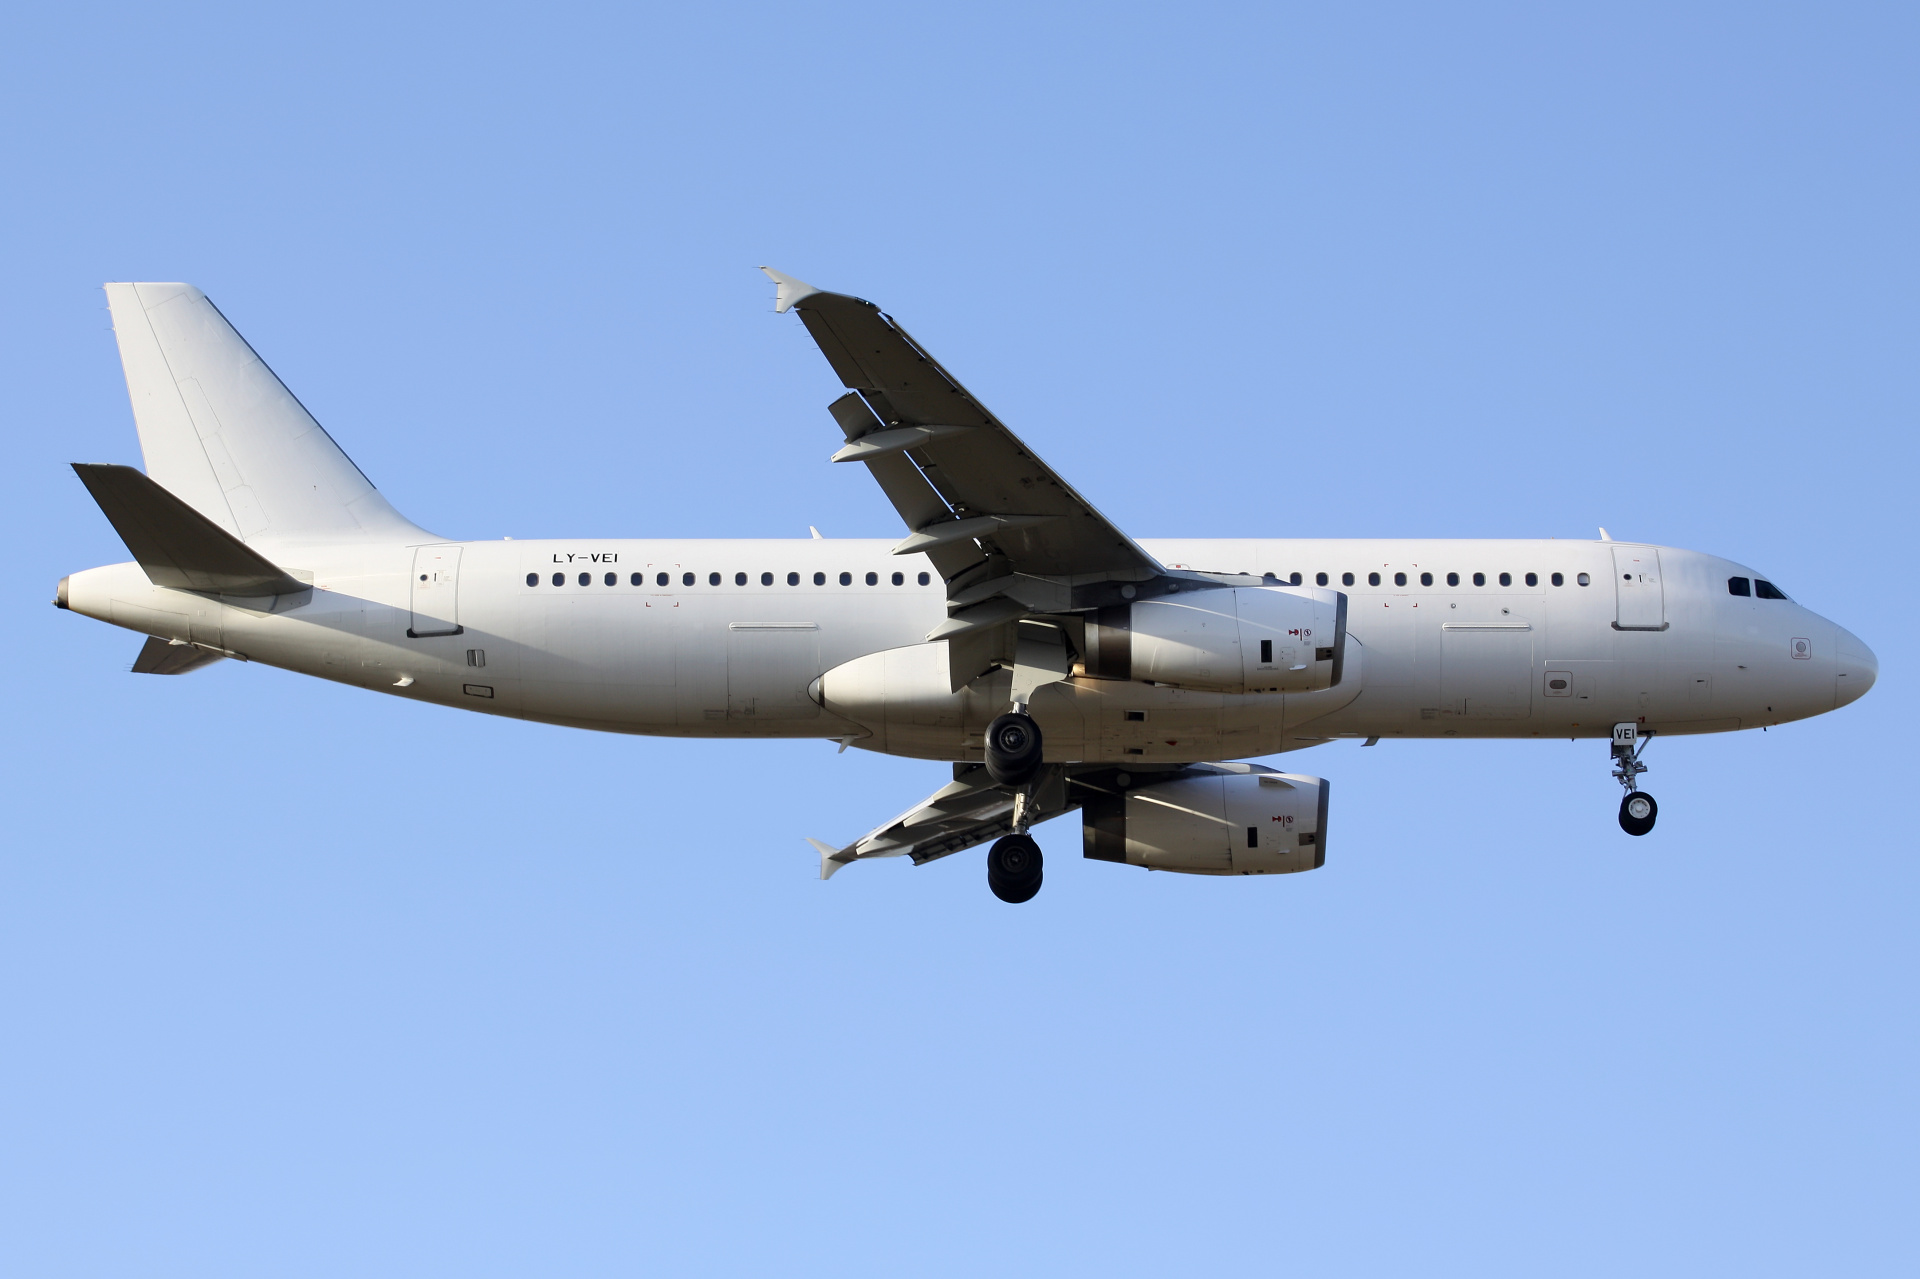 LY-VEI, Avion Express (Aircraft » EPWA Spotting » Airbus A320-200)